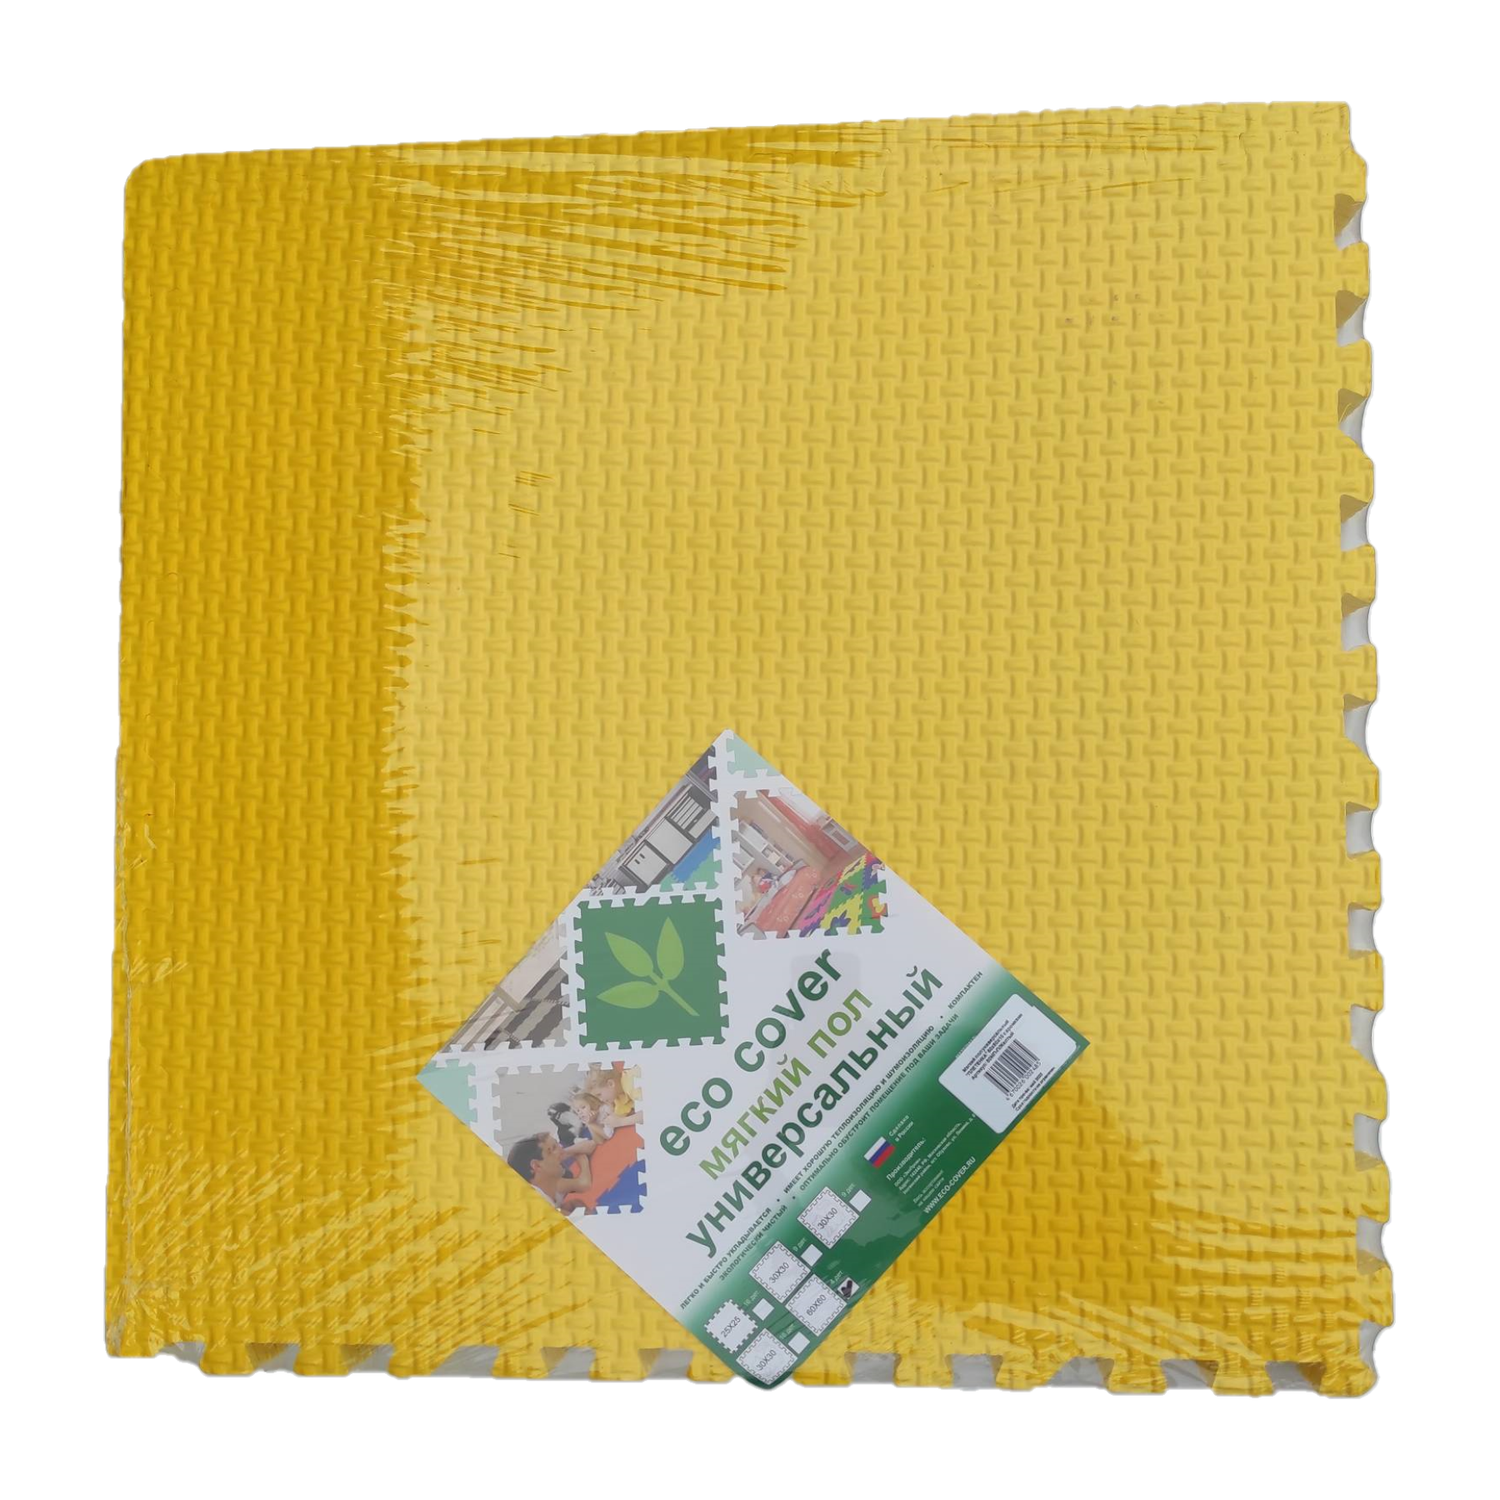 Развивающий детский коврик Eco cover игровой для ползания мягкий пол Плетенка 60х60 см. Желтый 4 детали - фото 2